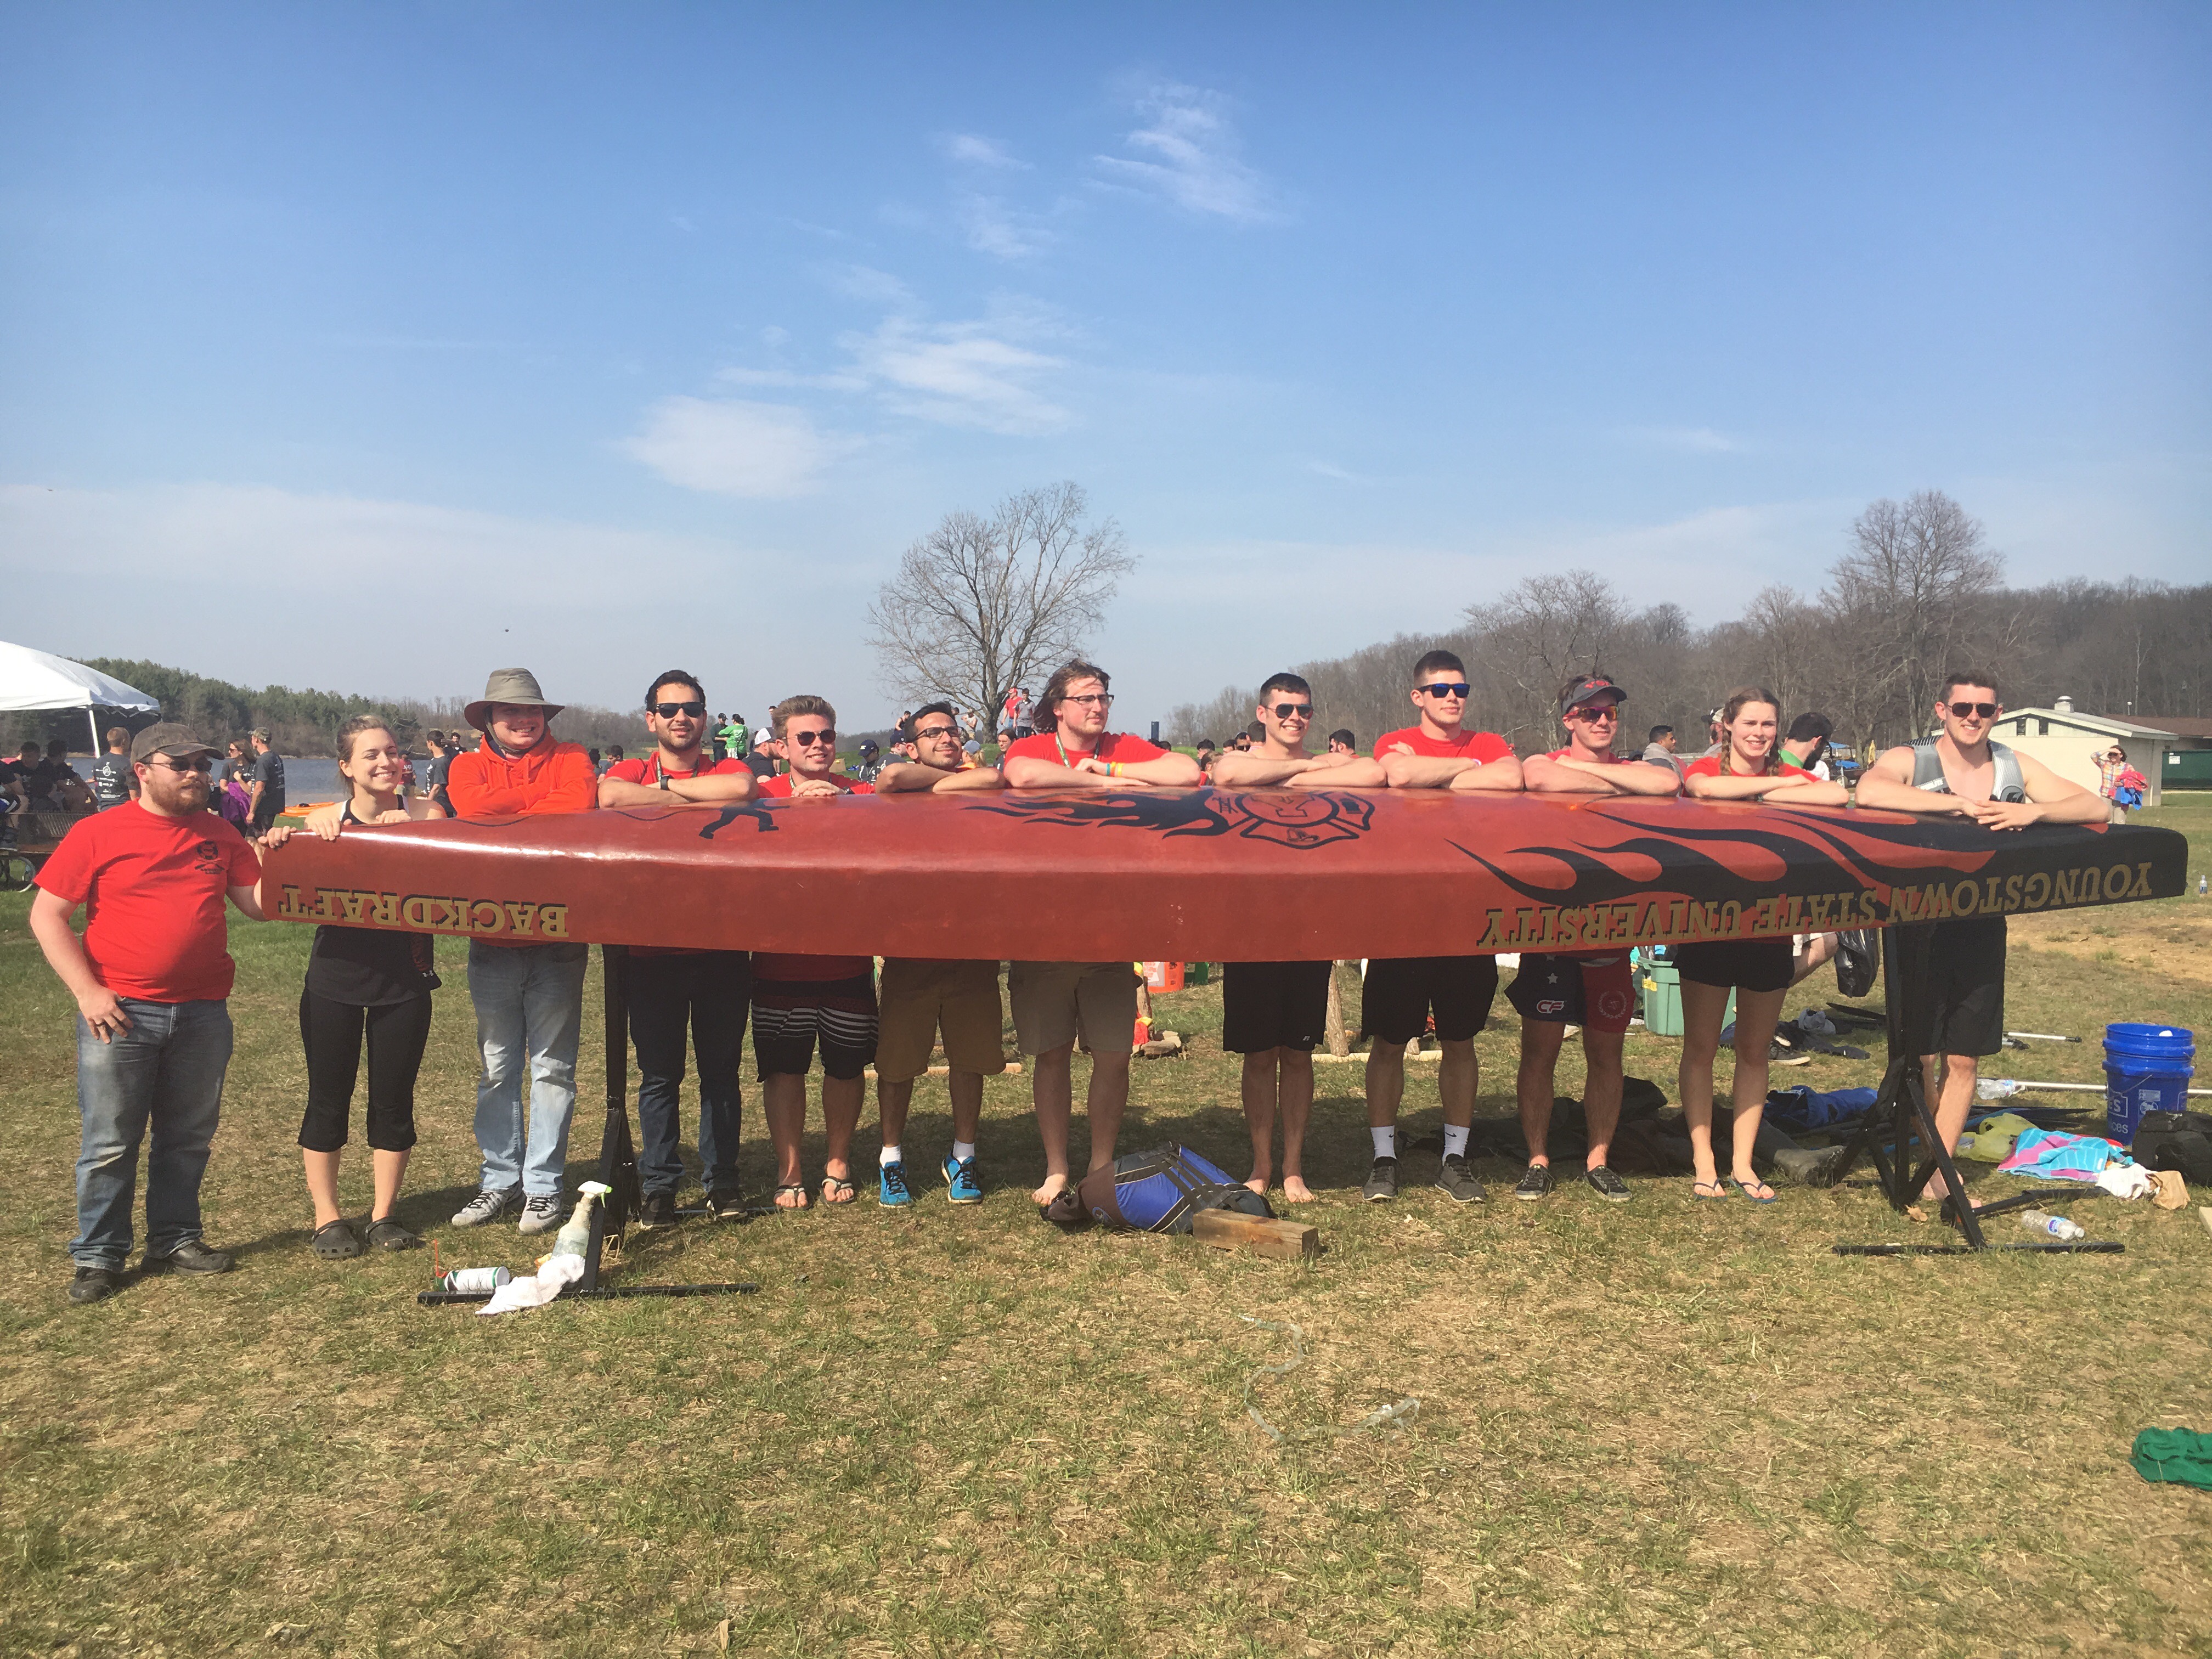 YSU Concrete Canoe Team